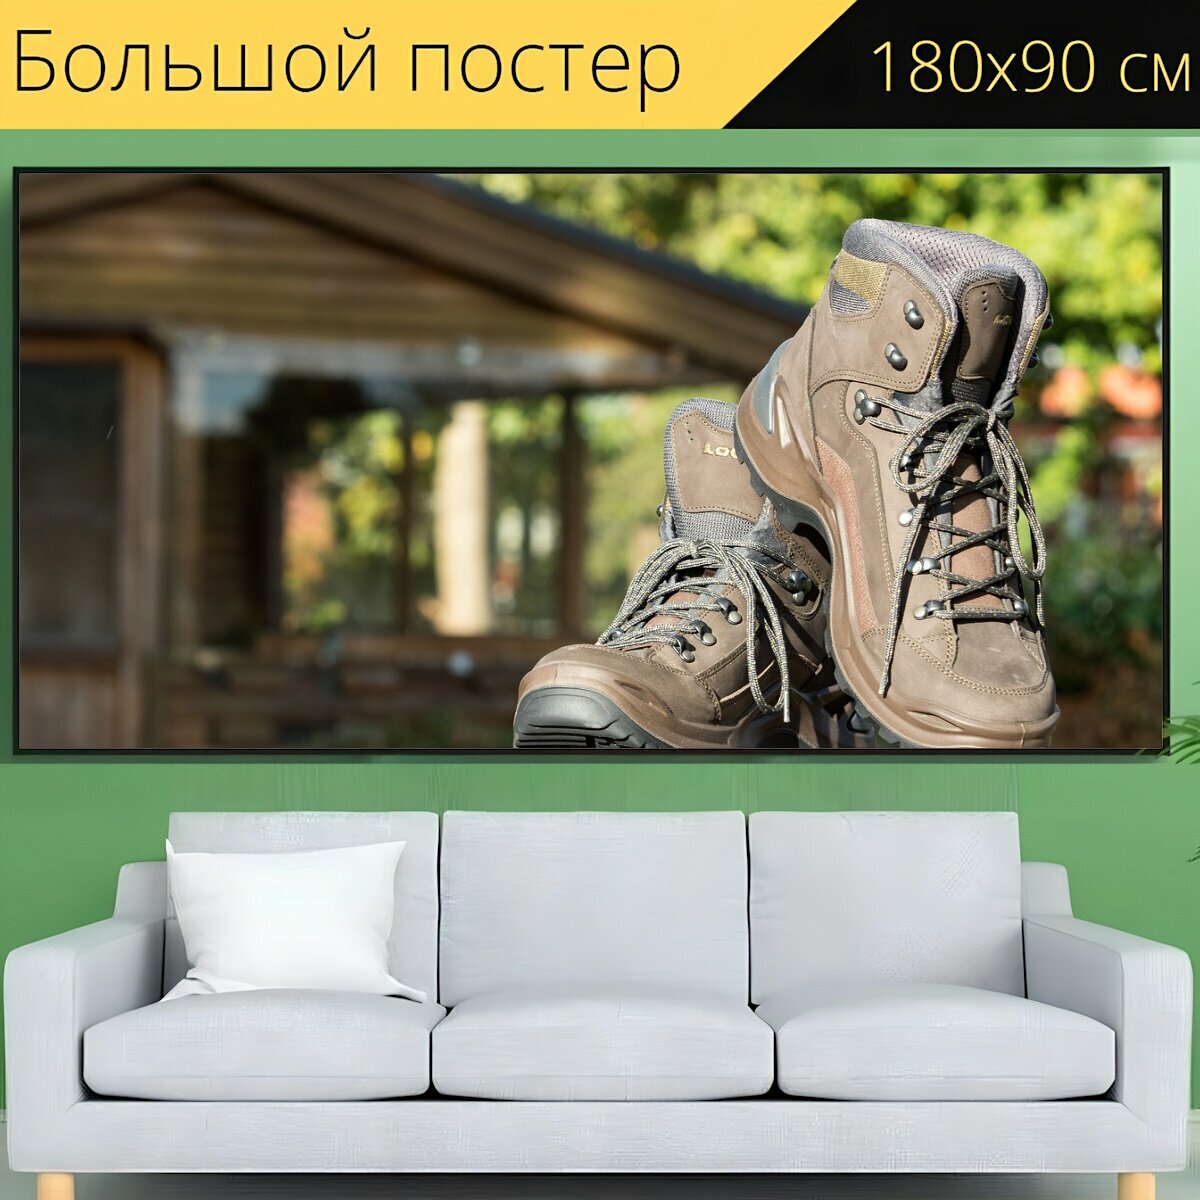 Большой постер "Поход, обувь, туристические ботинки" 180 x 90 см. для интерьера